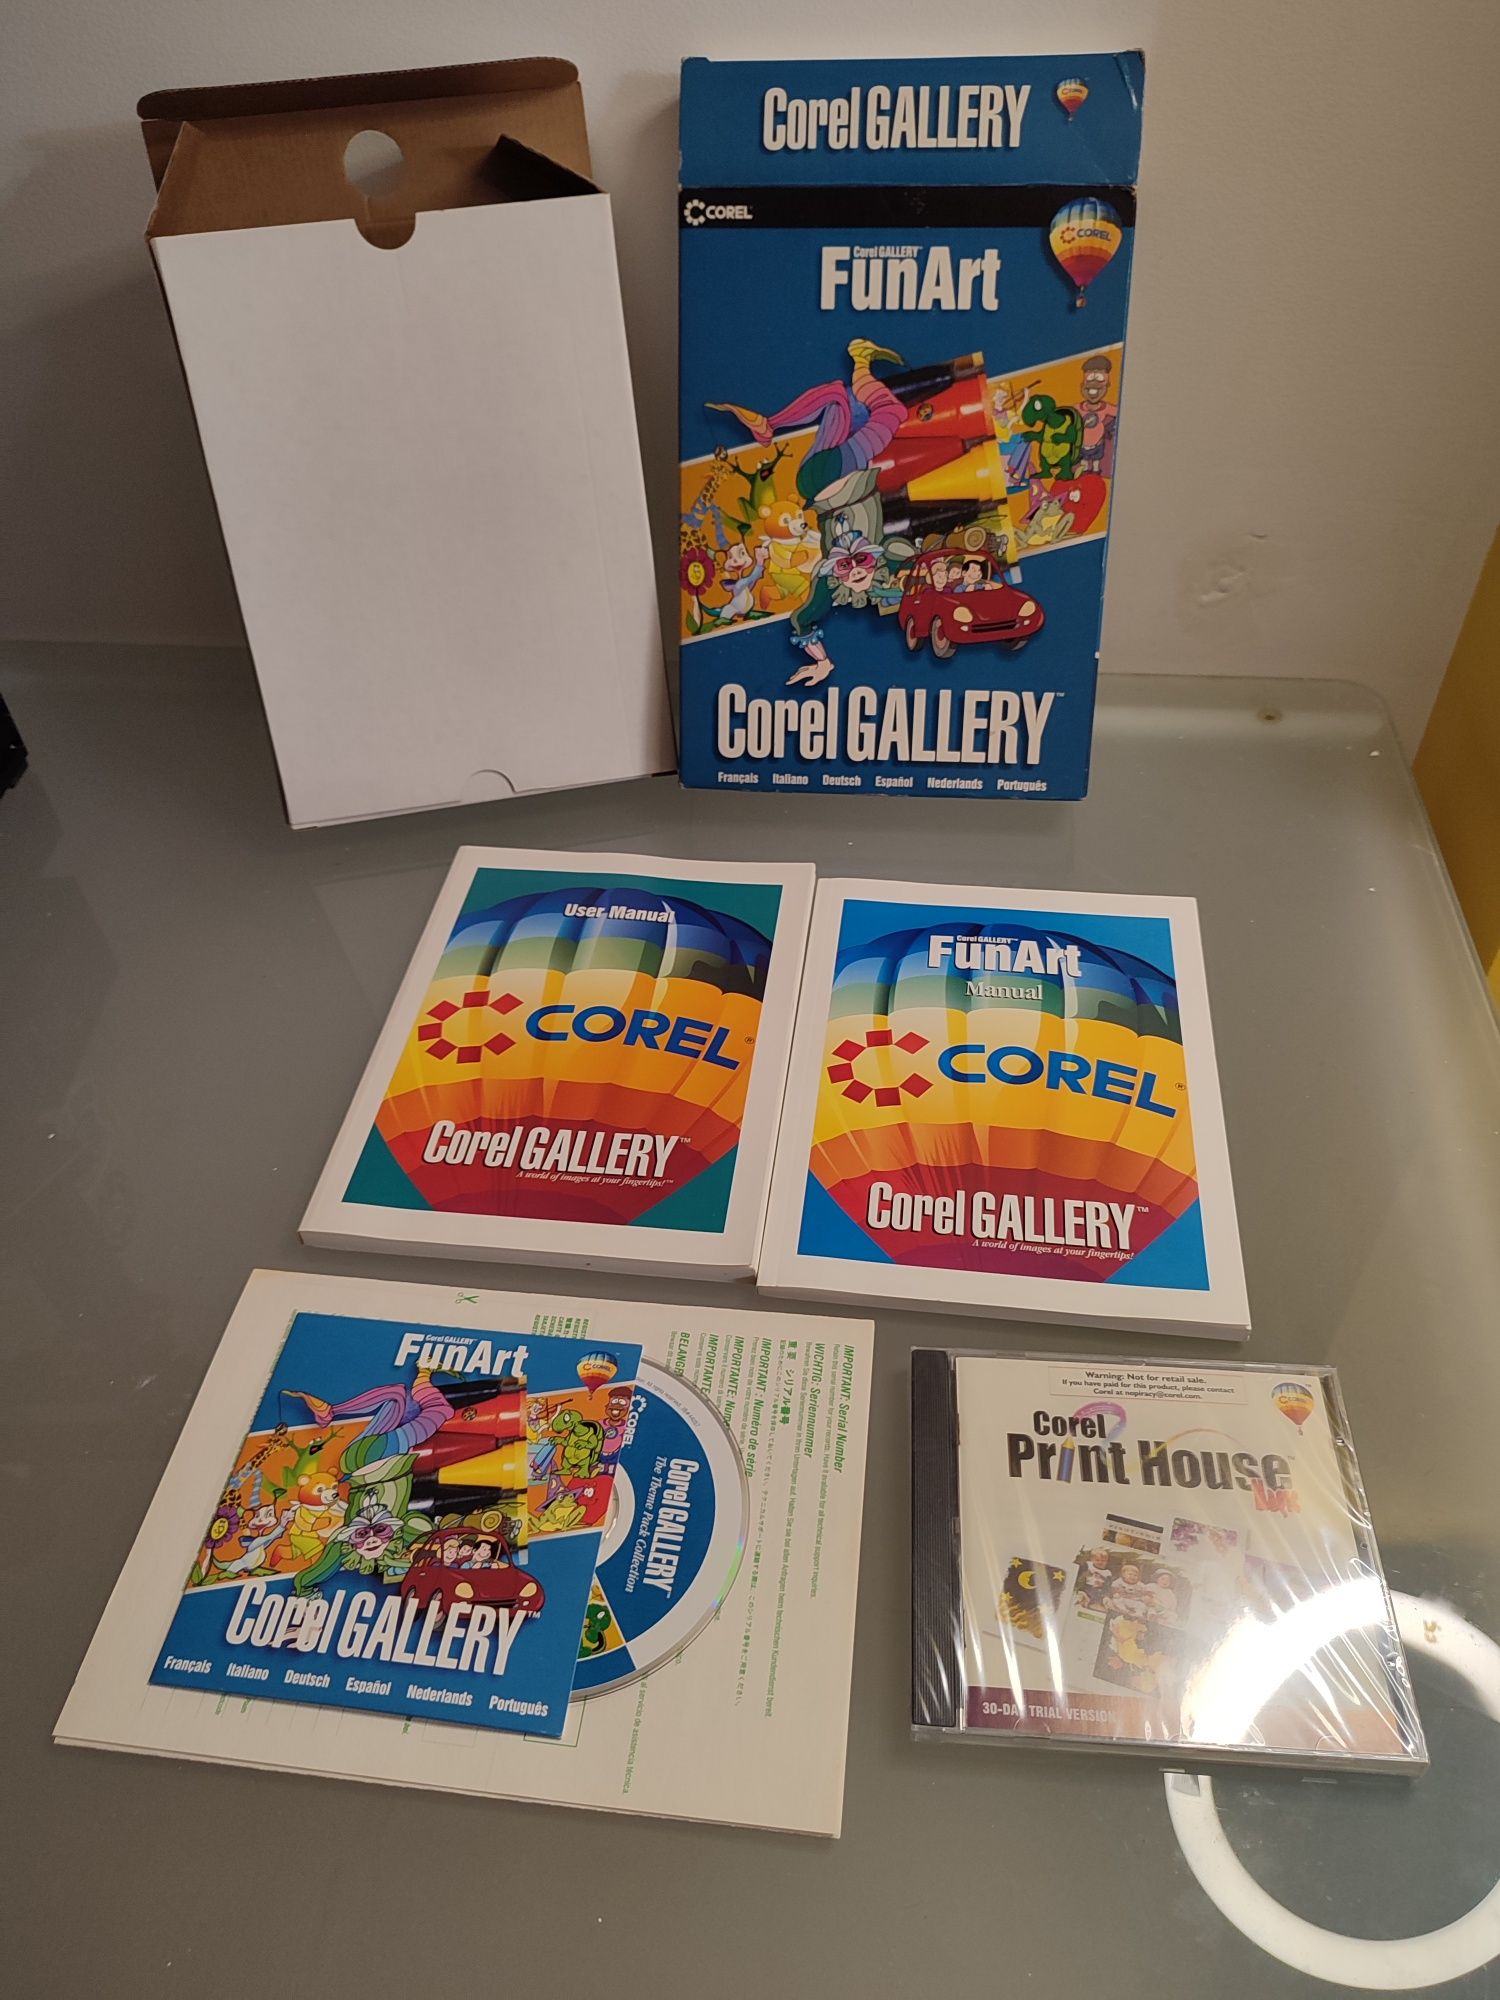 Corel Gallery FunArt (Coleção)